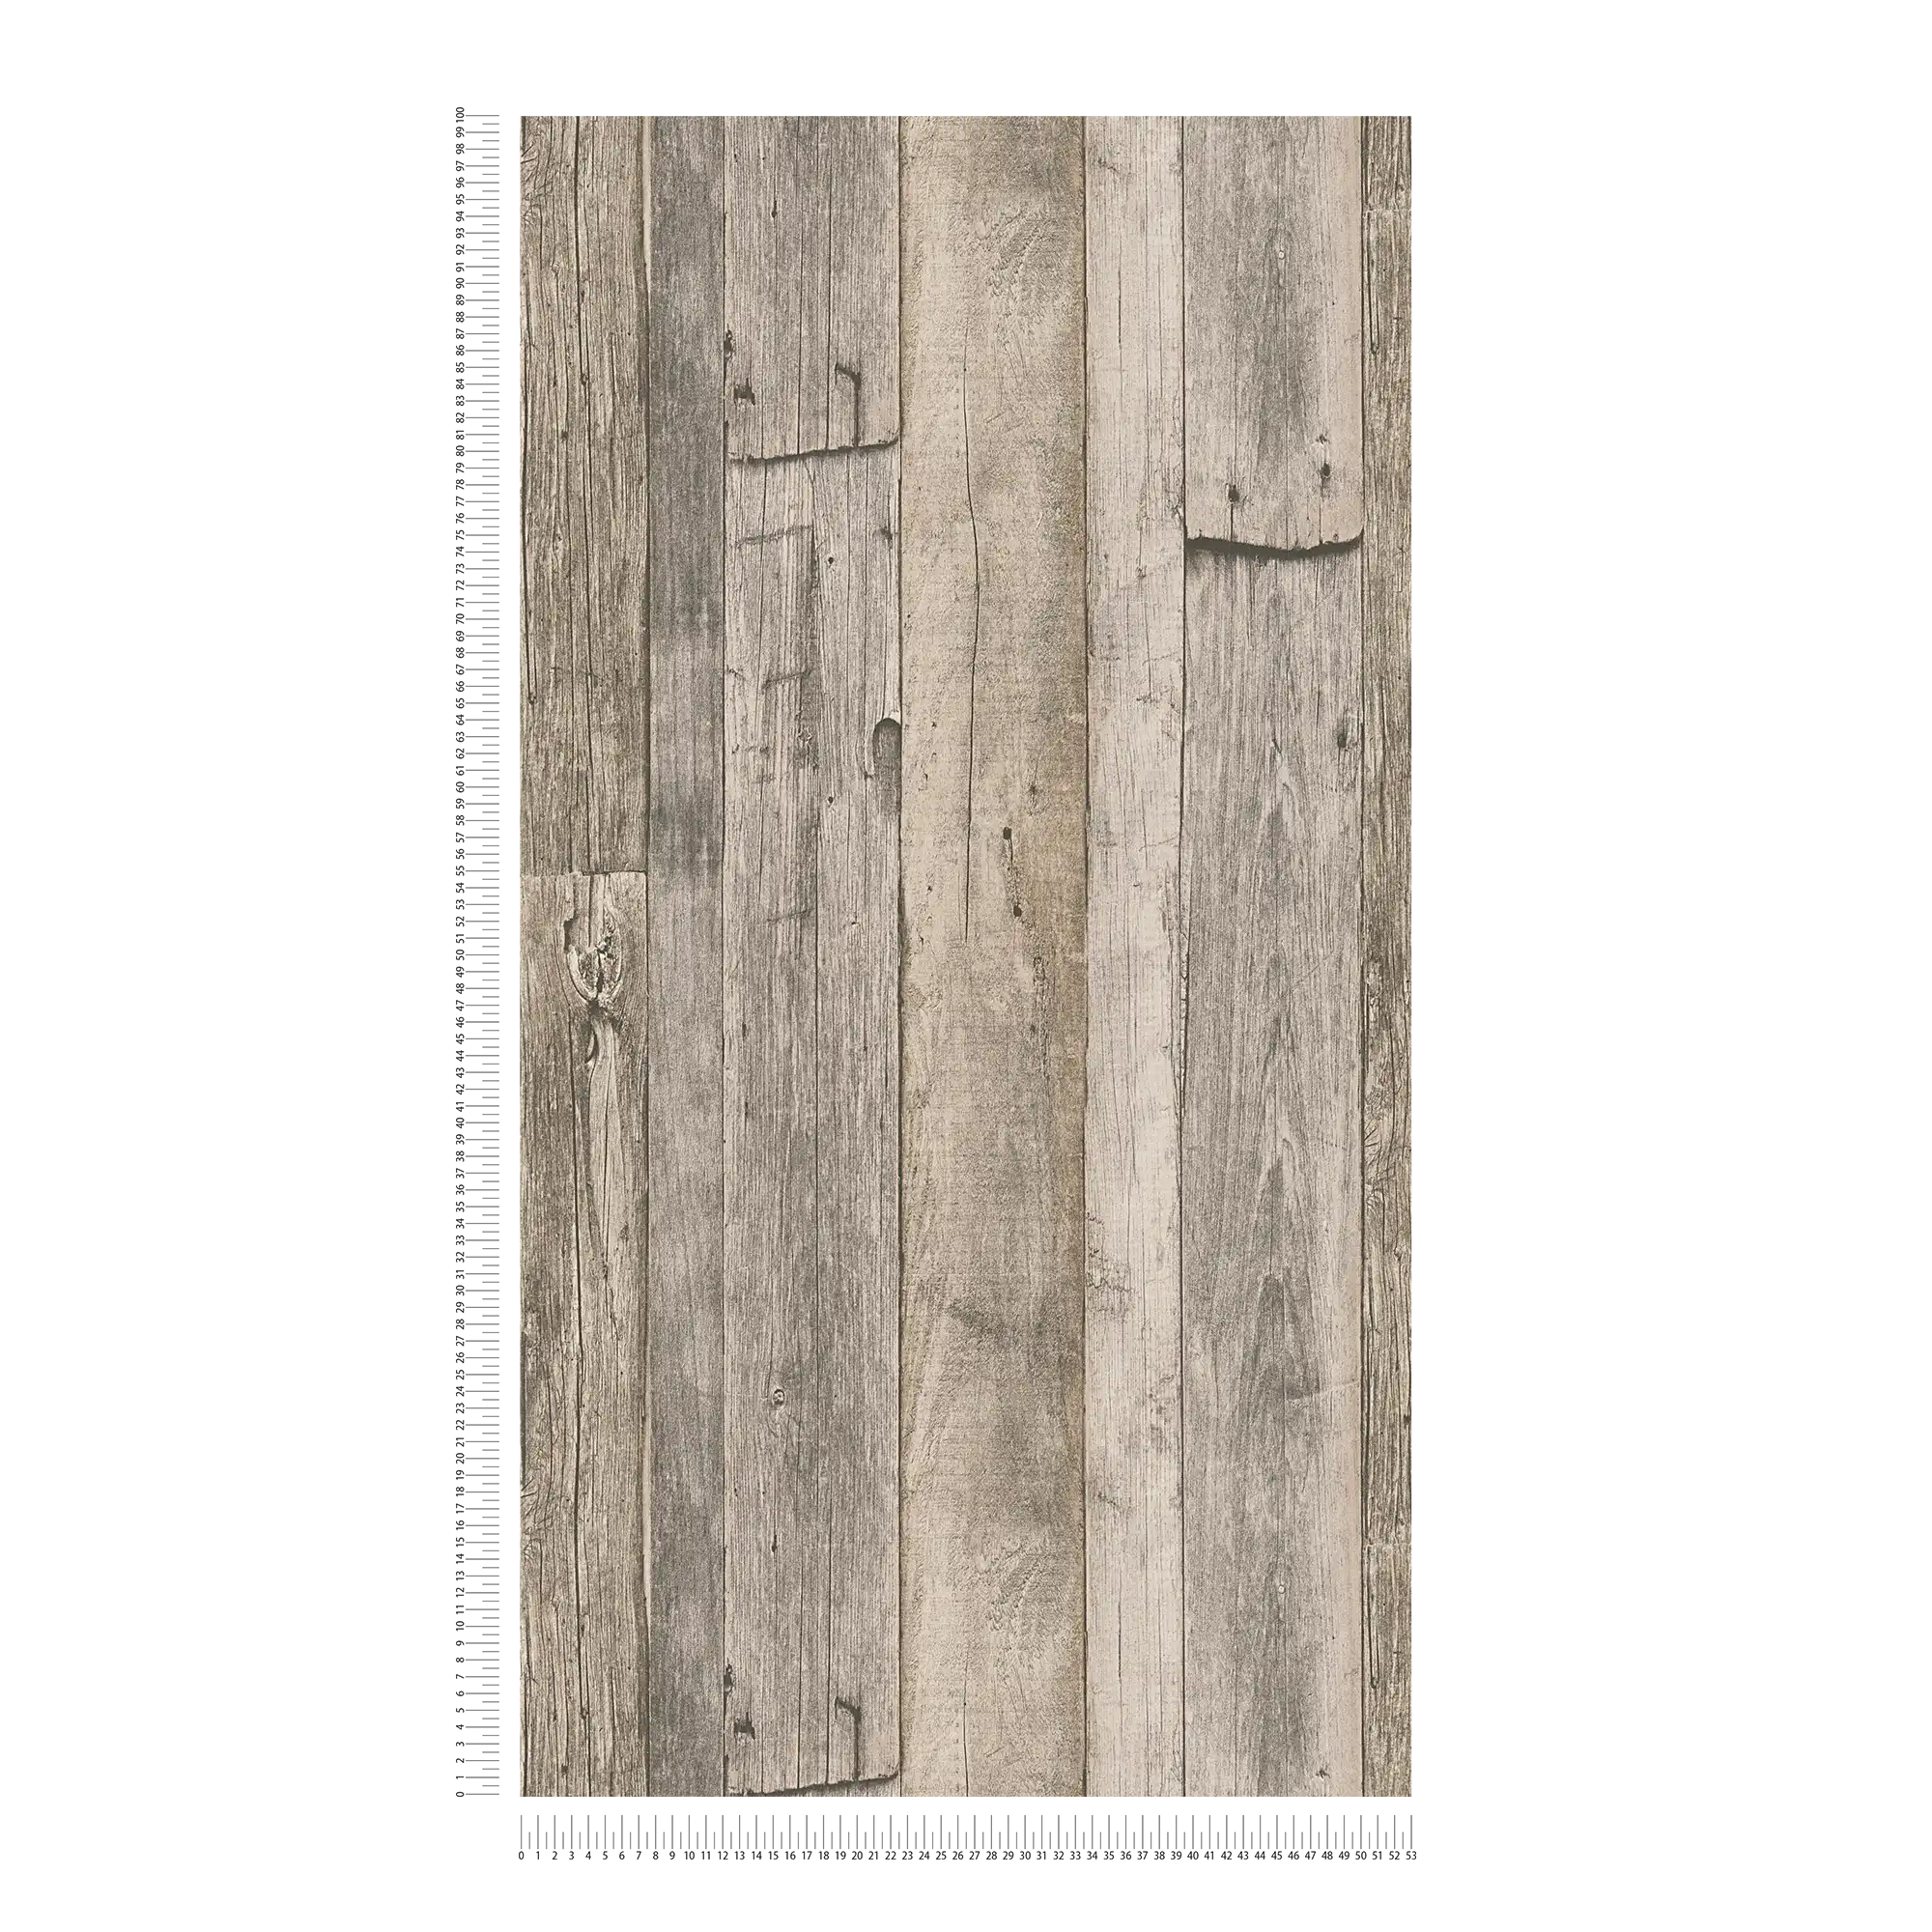             Wooden wallpaper with boards in rustic industrial design - beige, black, cream
        